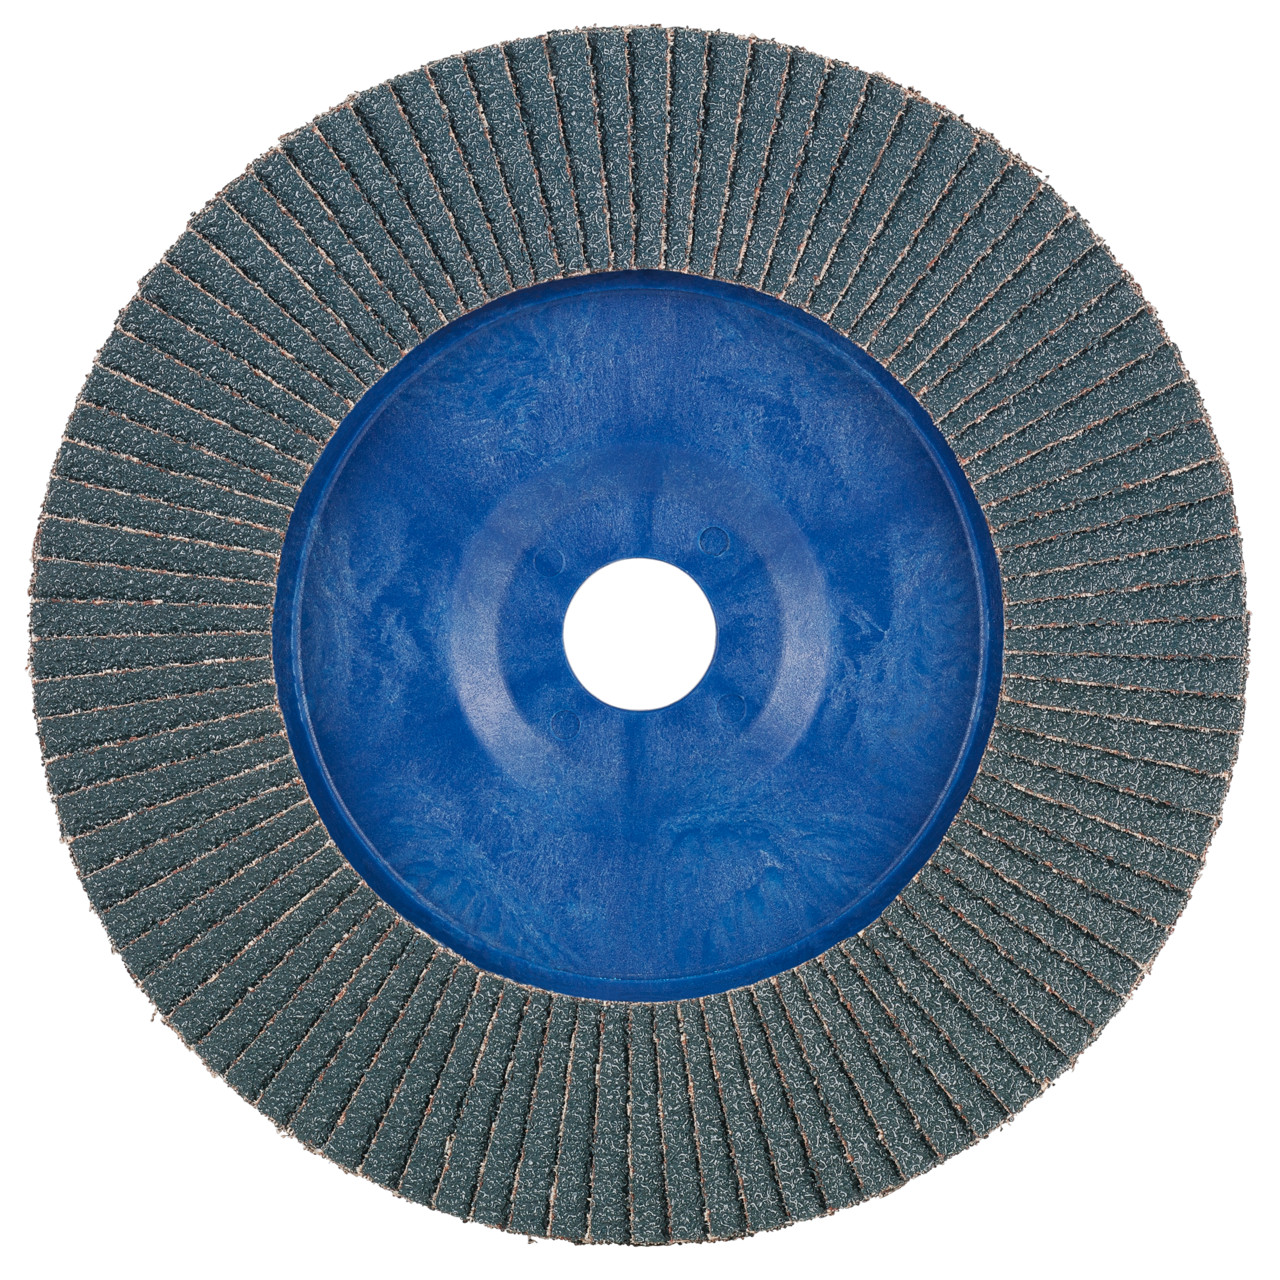 Rondella dentata Tyrolit DxH 125x22.2 2in1 per acciaio e acciaio inox, P80, forma: 28N - versione diritta (corpo portante in plastica), Art. 847928